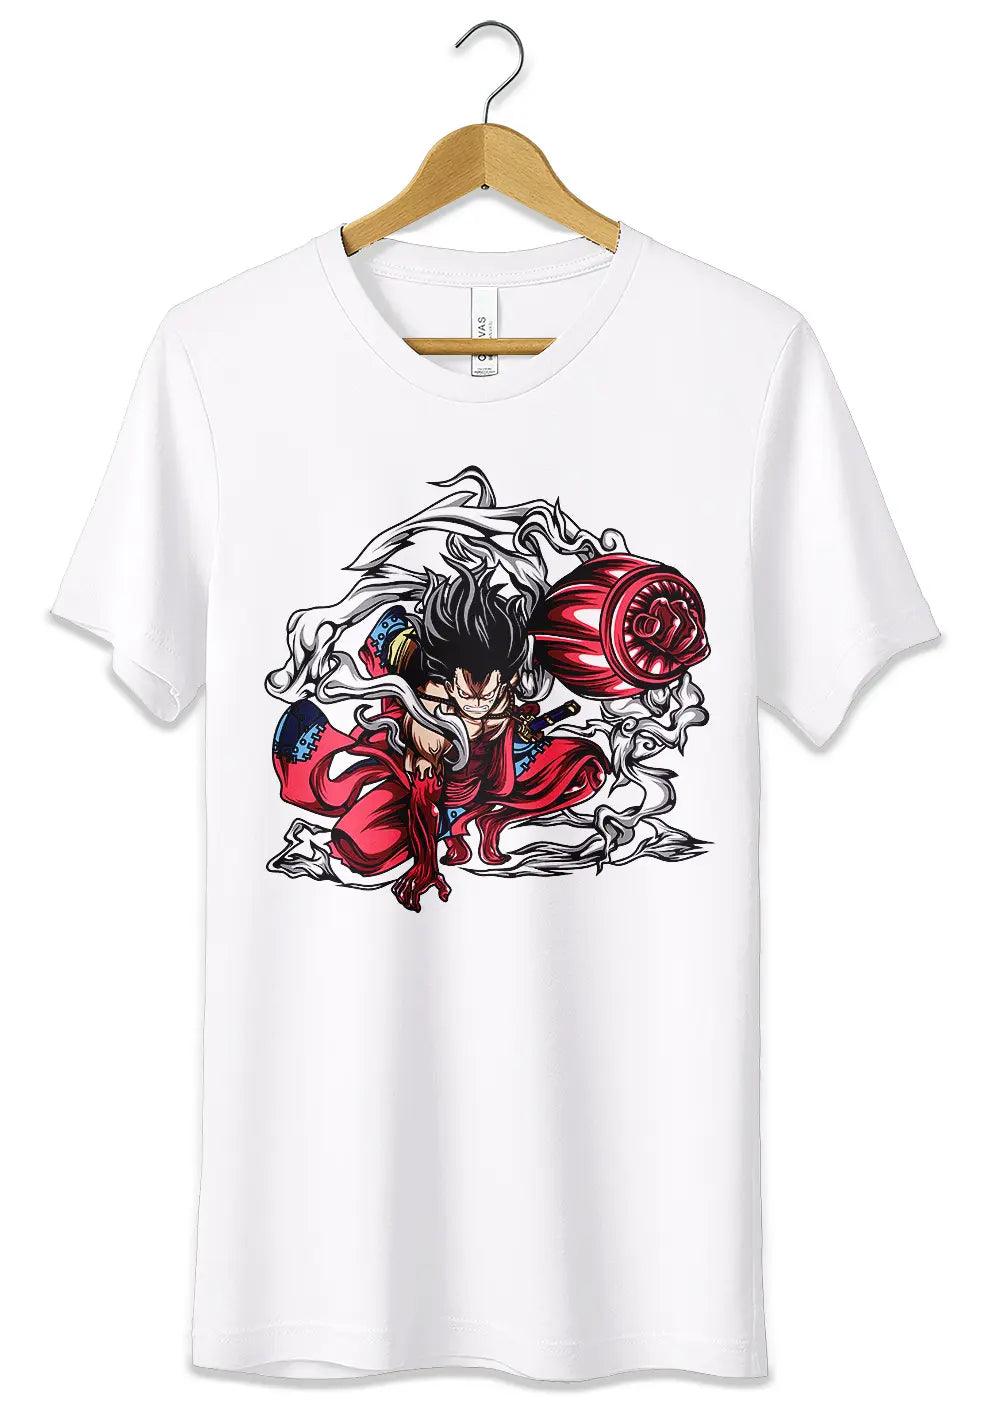 T-Shirt Maglietta Monkey D Luffy Rubber Gear 4 Snakeman One Piece, CmrDesignStore, T-Shirt, t-shirt-maglietta-monkey-d-luffy-rubber-gear-4-snakeman-one-piece, CmrDesignStore